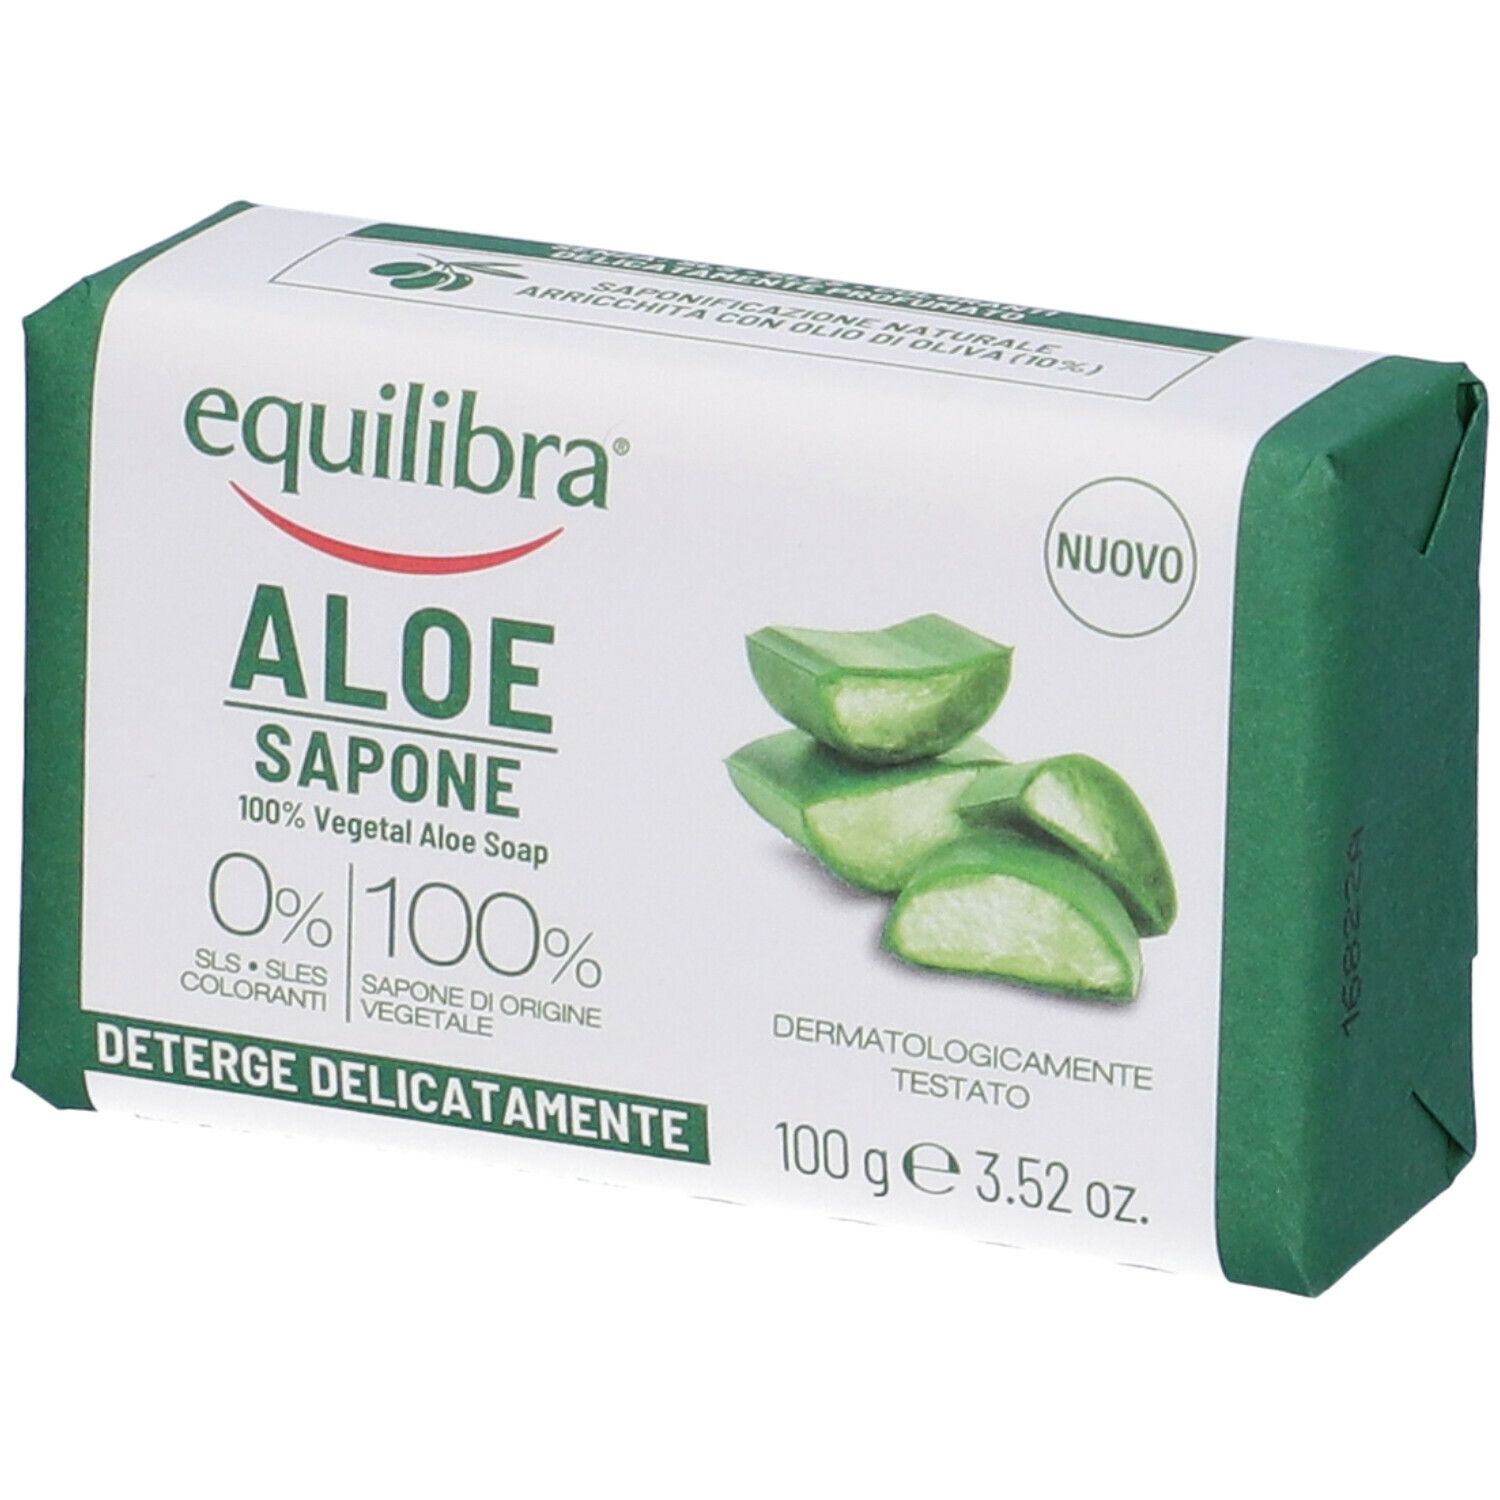 Equilibra® Aloe Sapone 100% Vegetale